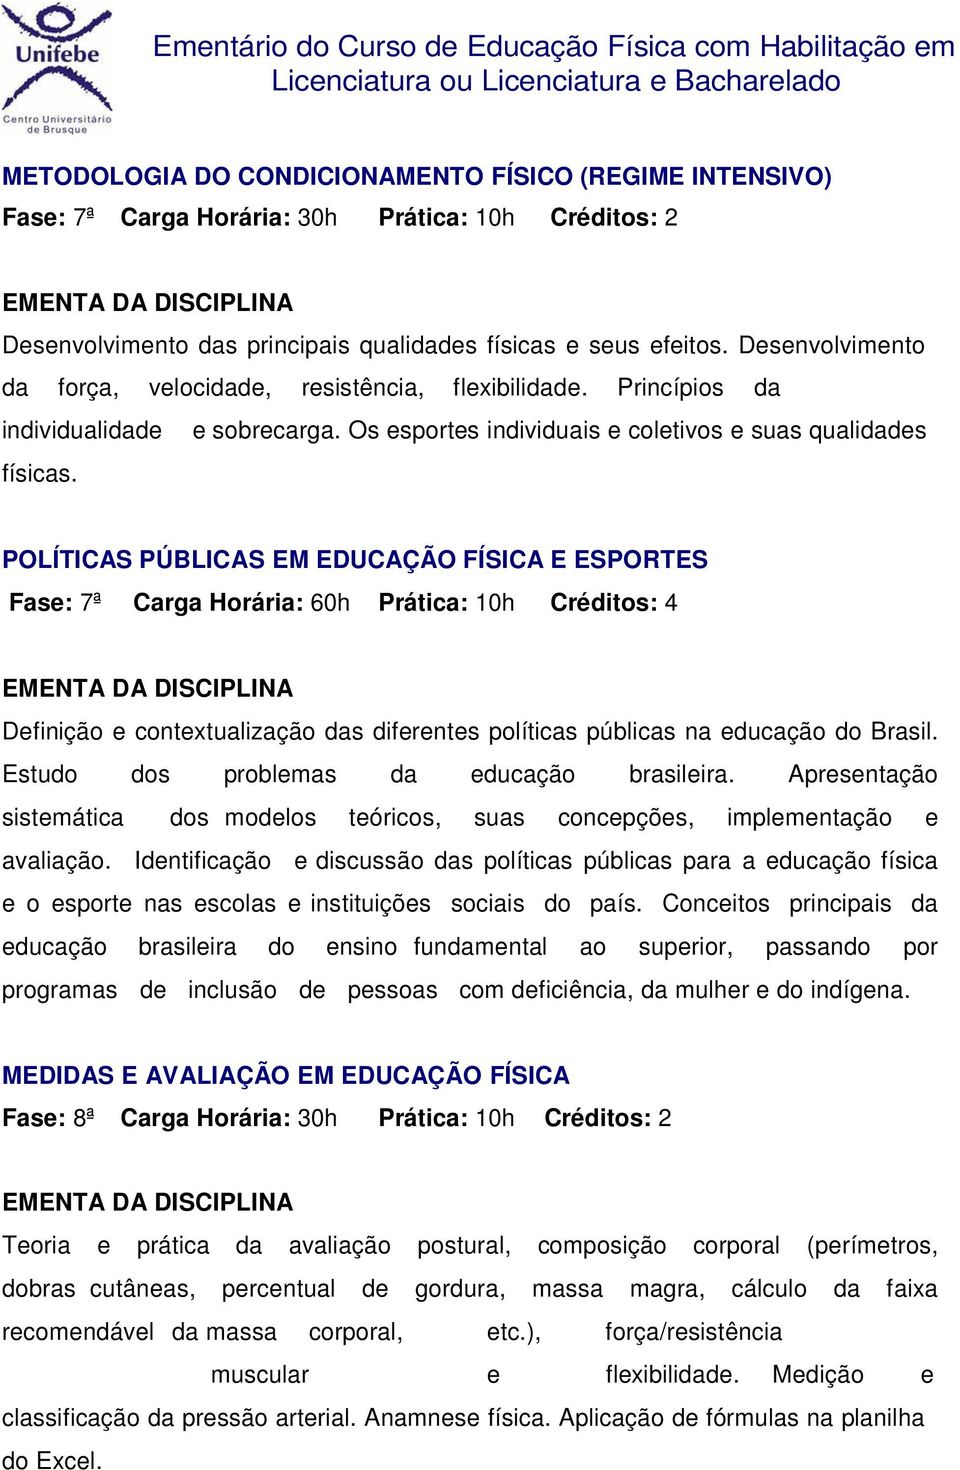 POLÍTICAS PÚBLICAS EM EDUCAÇÃO FÍSICA E ESPORTES Fase: 7ª Carga Horária: 60h Prática: 10h Créditos: 4 Definição e contextualização das diferentes políticas públicas na educação do Brasil.